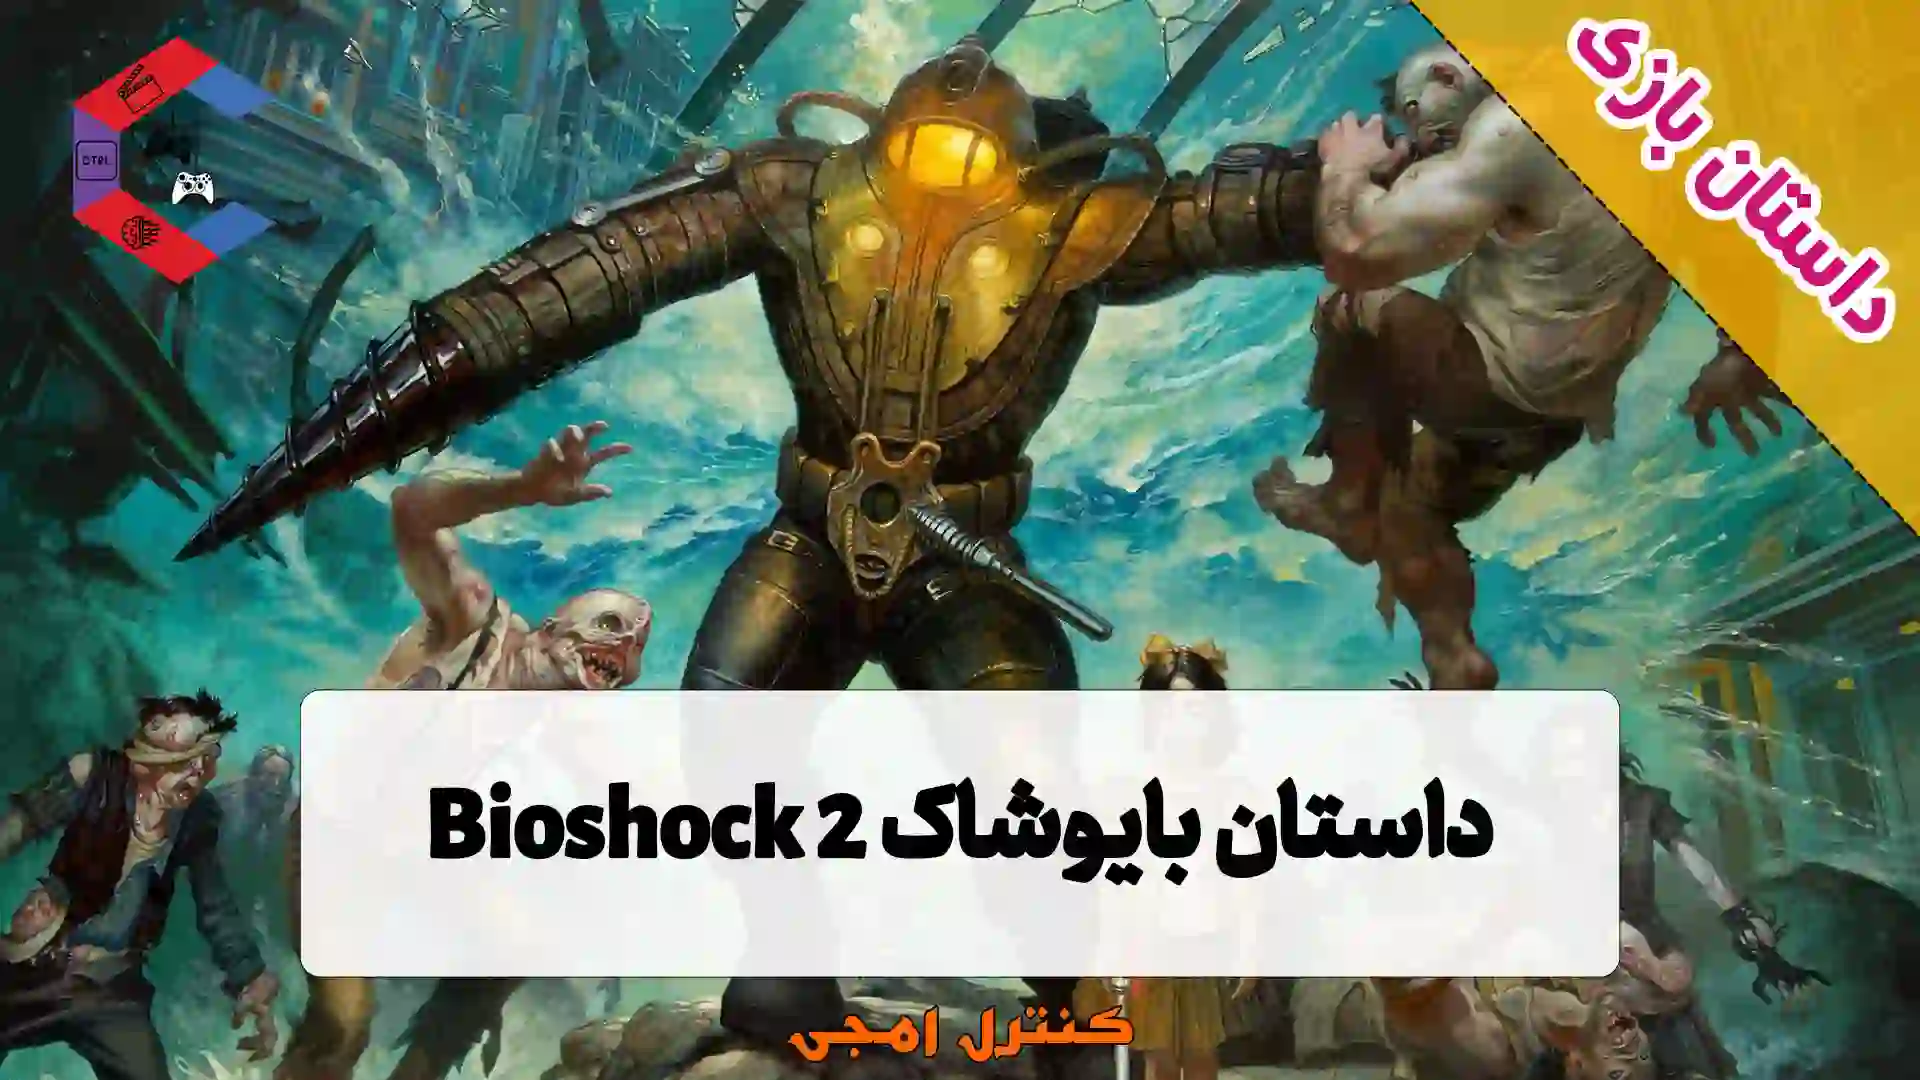 داستان بازی بایوشاک Bioshock 2